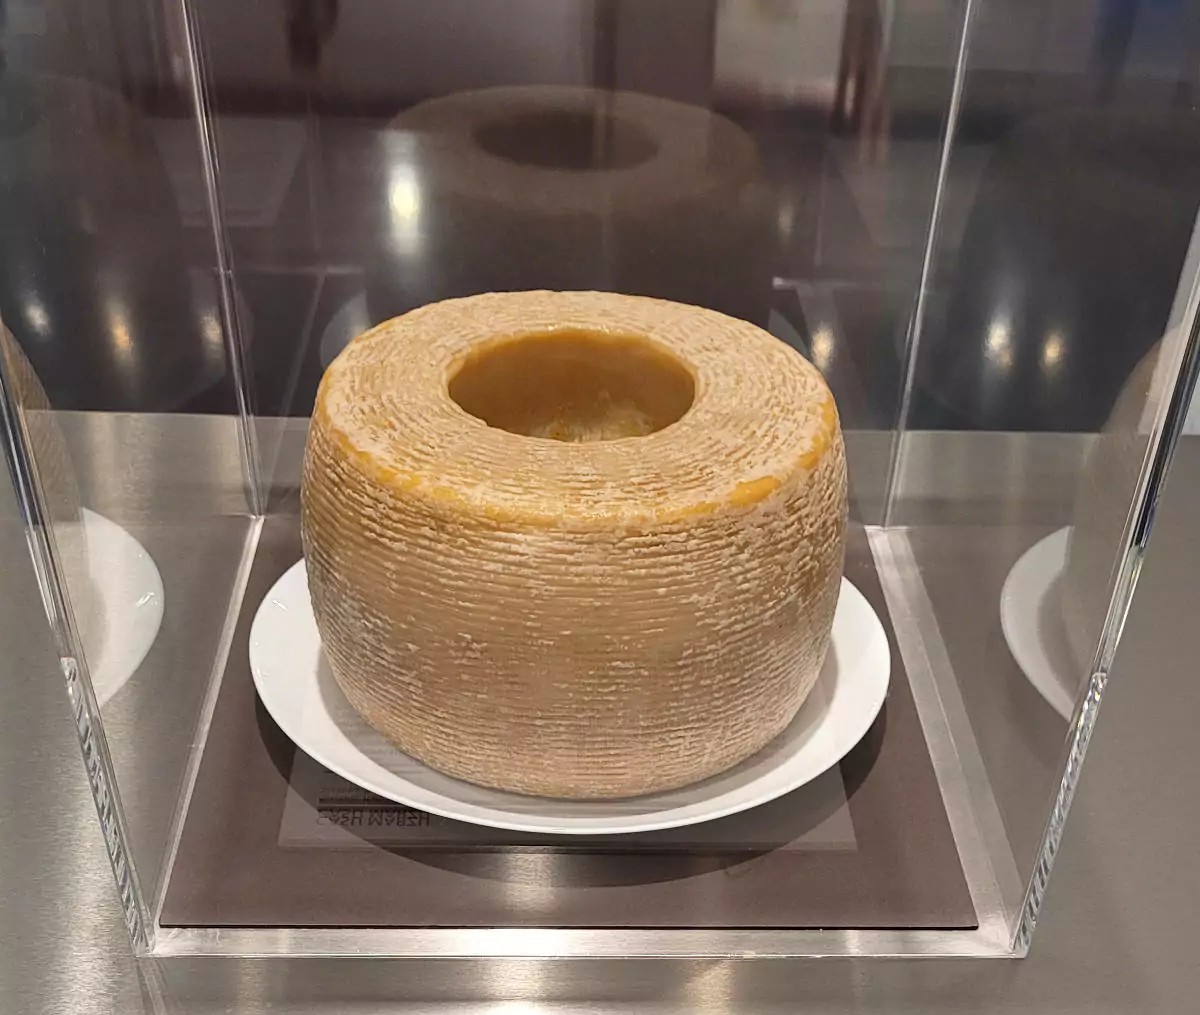 Bảo tàng trưng bày những món ăn kinh dị ở Đức - 2